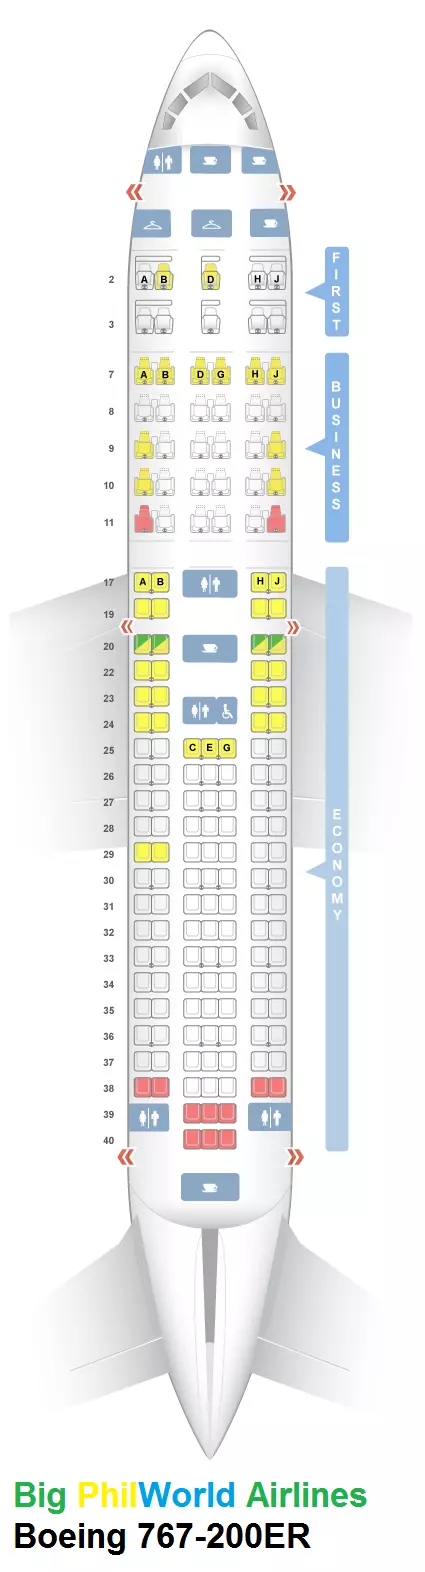 Boeing 737-800 utair: лучшие места и схема салона